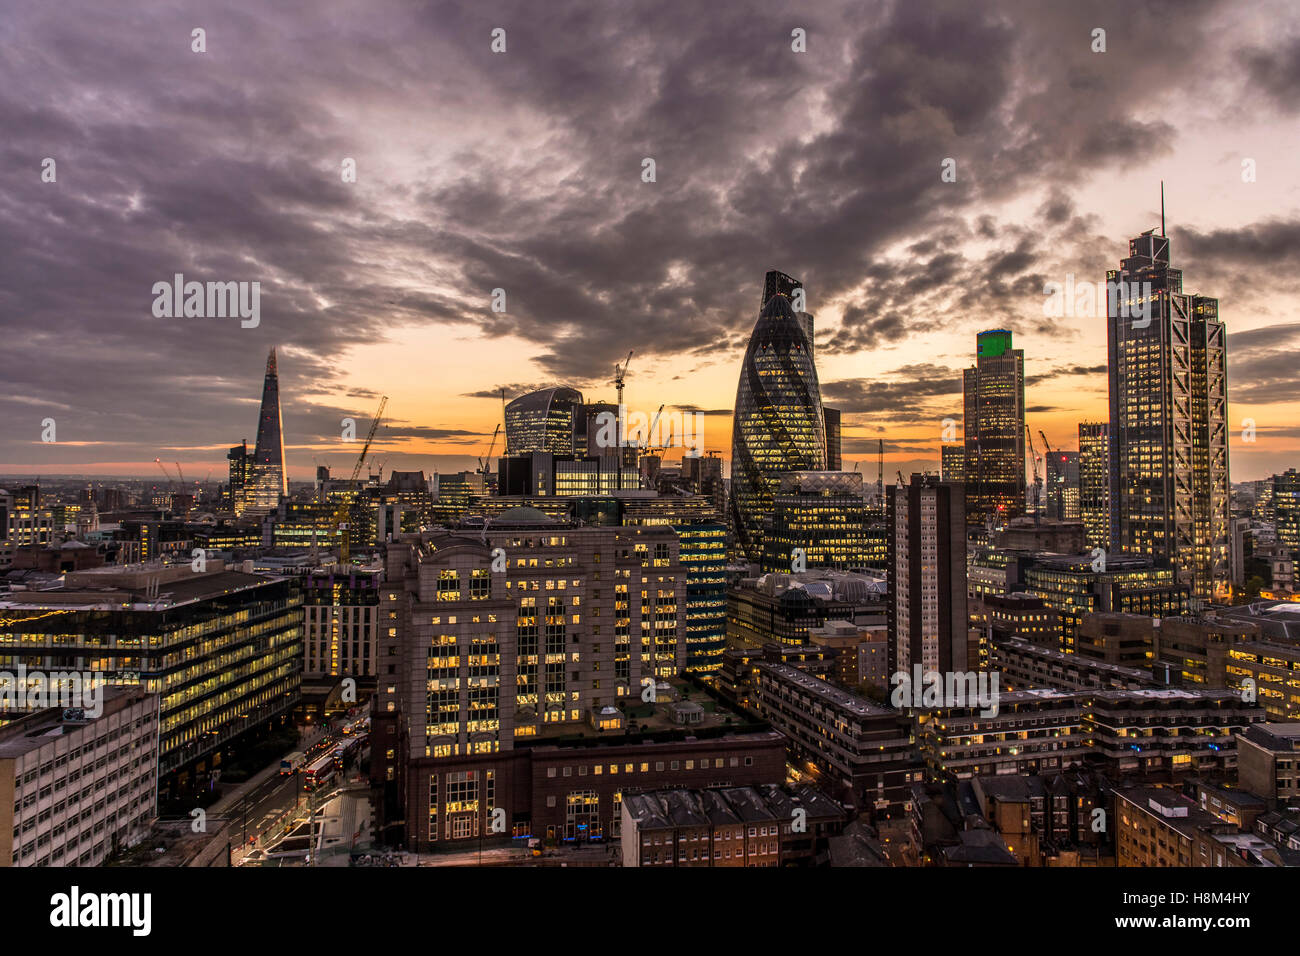 eine Skyline von London, Stadtbild, Hochhaus, Wolkenkratzer Gherkin, Tower 42, Heron-Tower, Nacht, Dämmerung Stadt, Finanzplatz Stockfoto